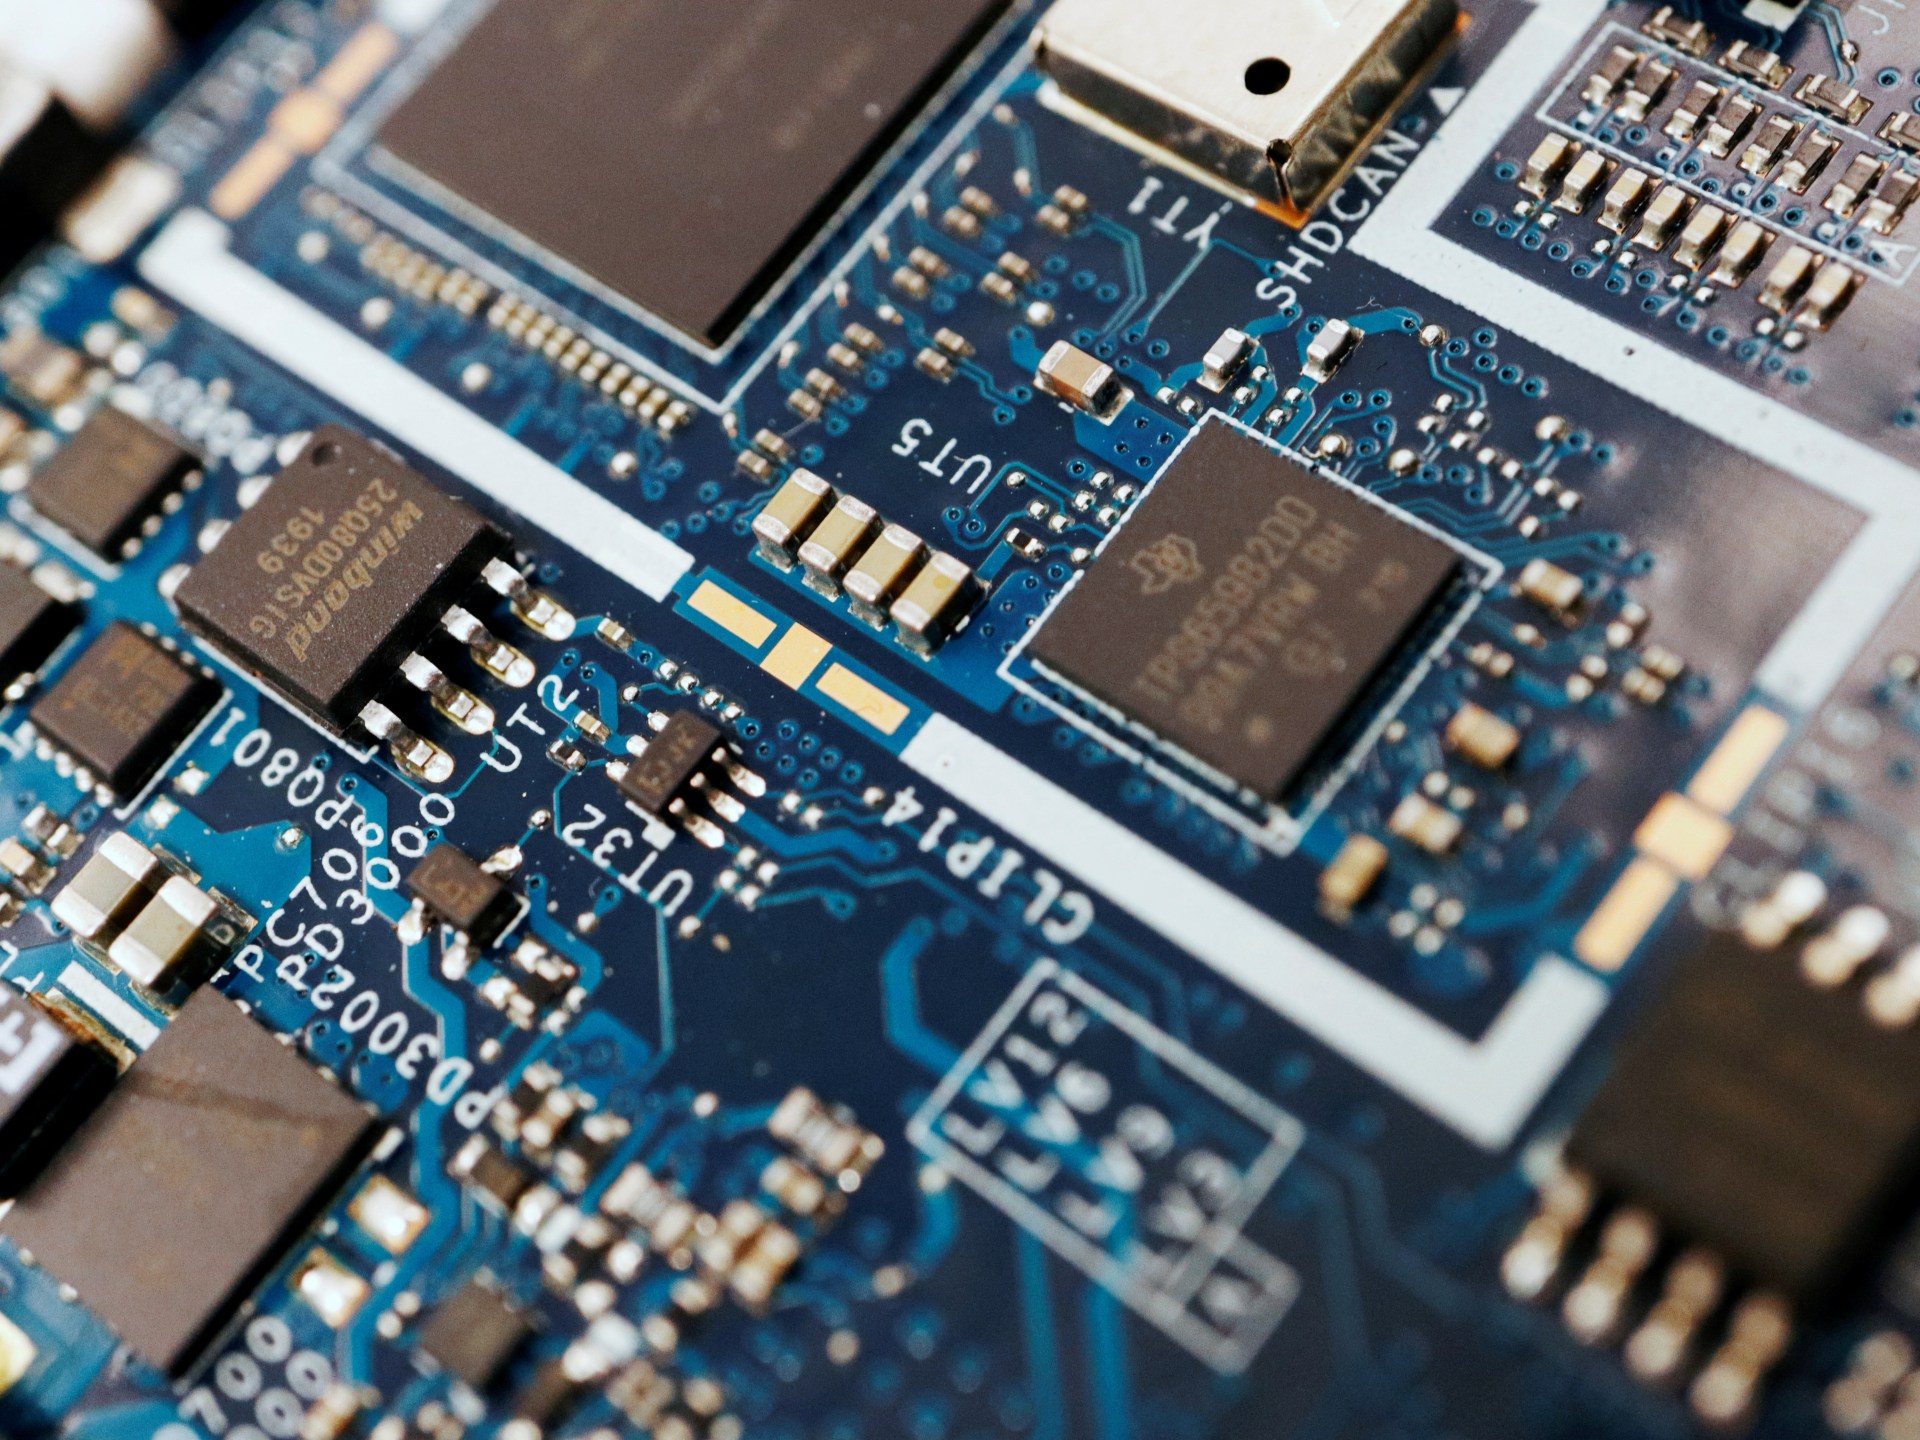 Perusahaan Belanda harus mendapatkan lisensi sebelum mengekspor peralatan chip: Pemerintah |  Berita Sains dan Teknologi